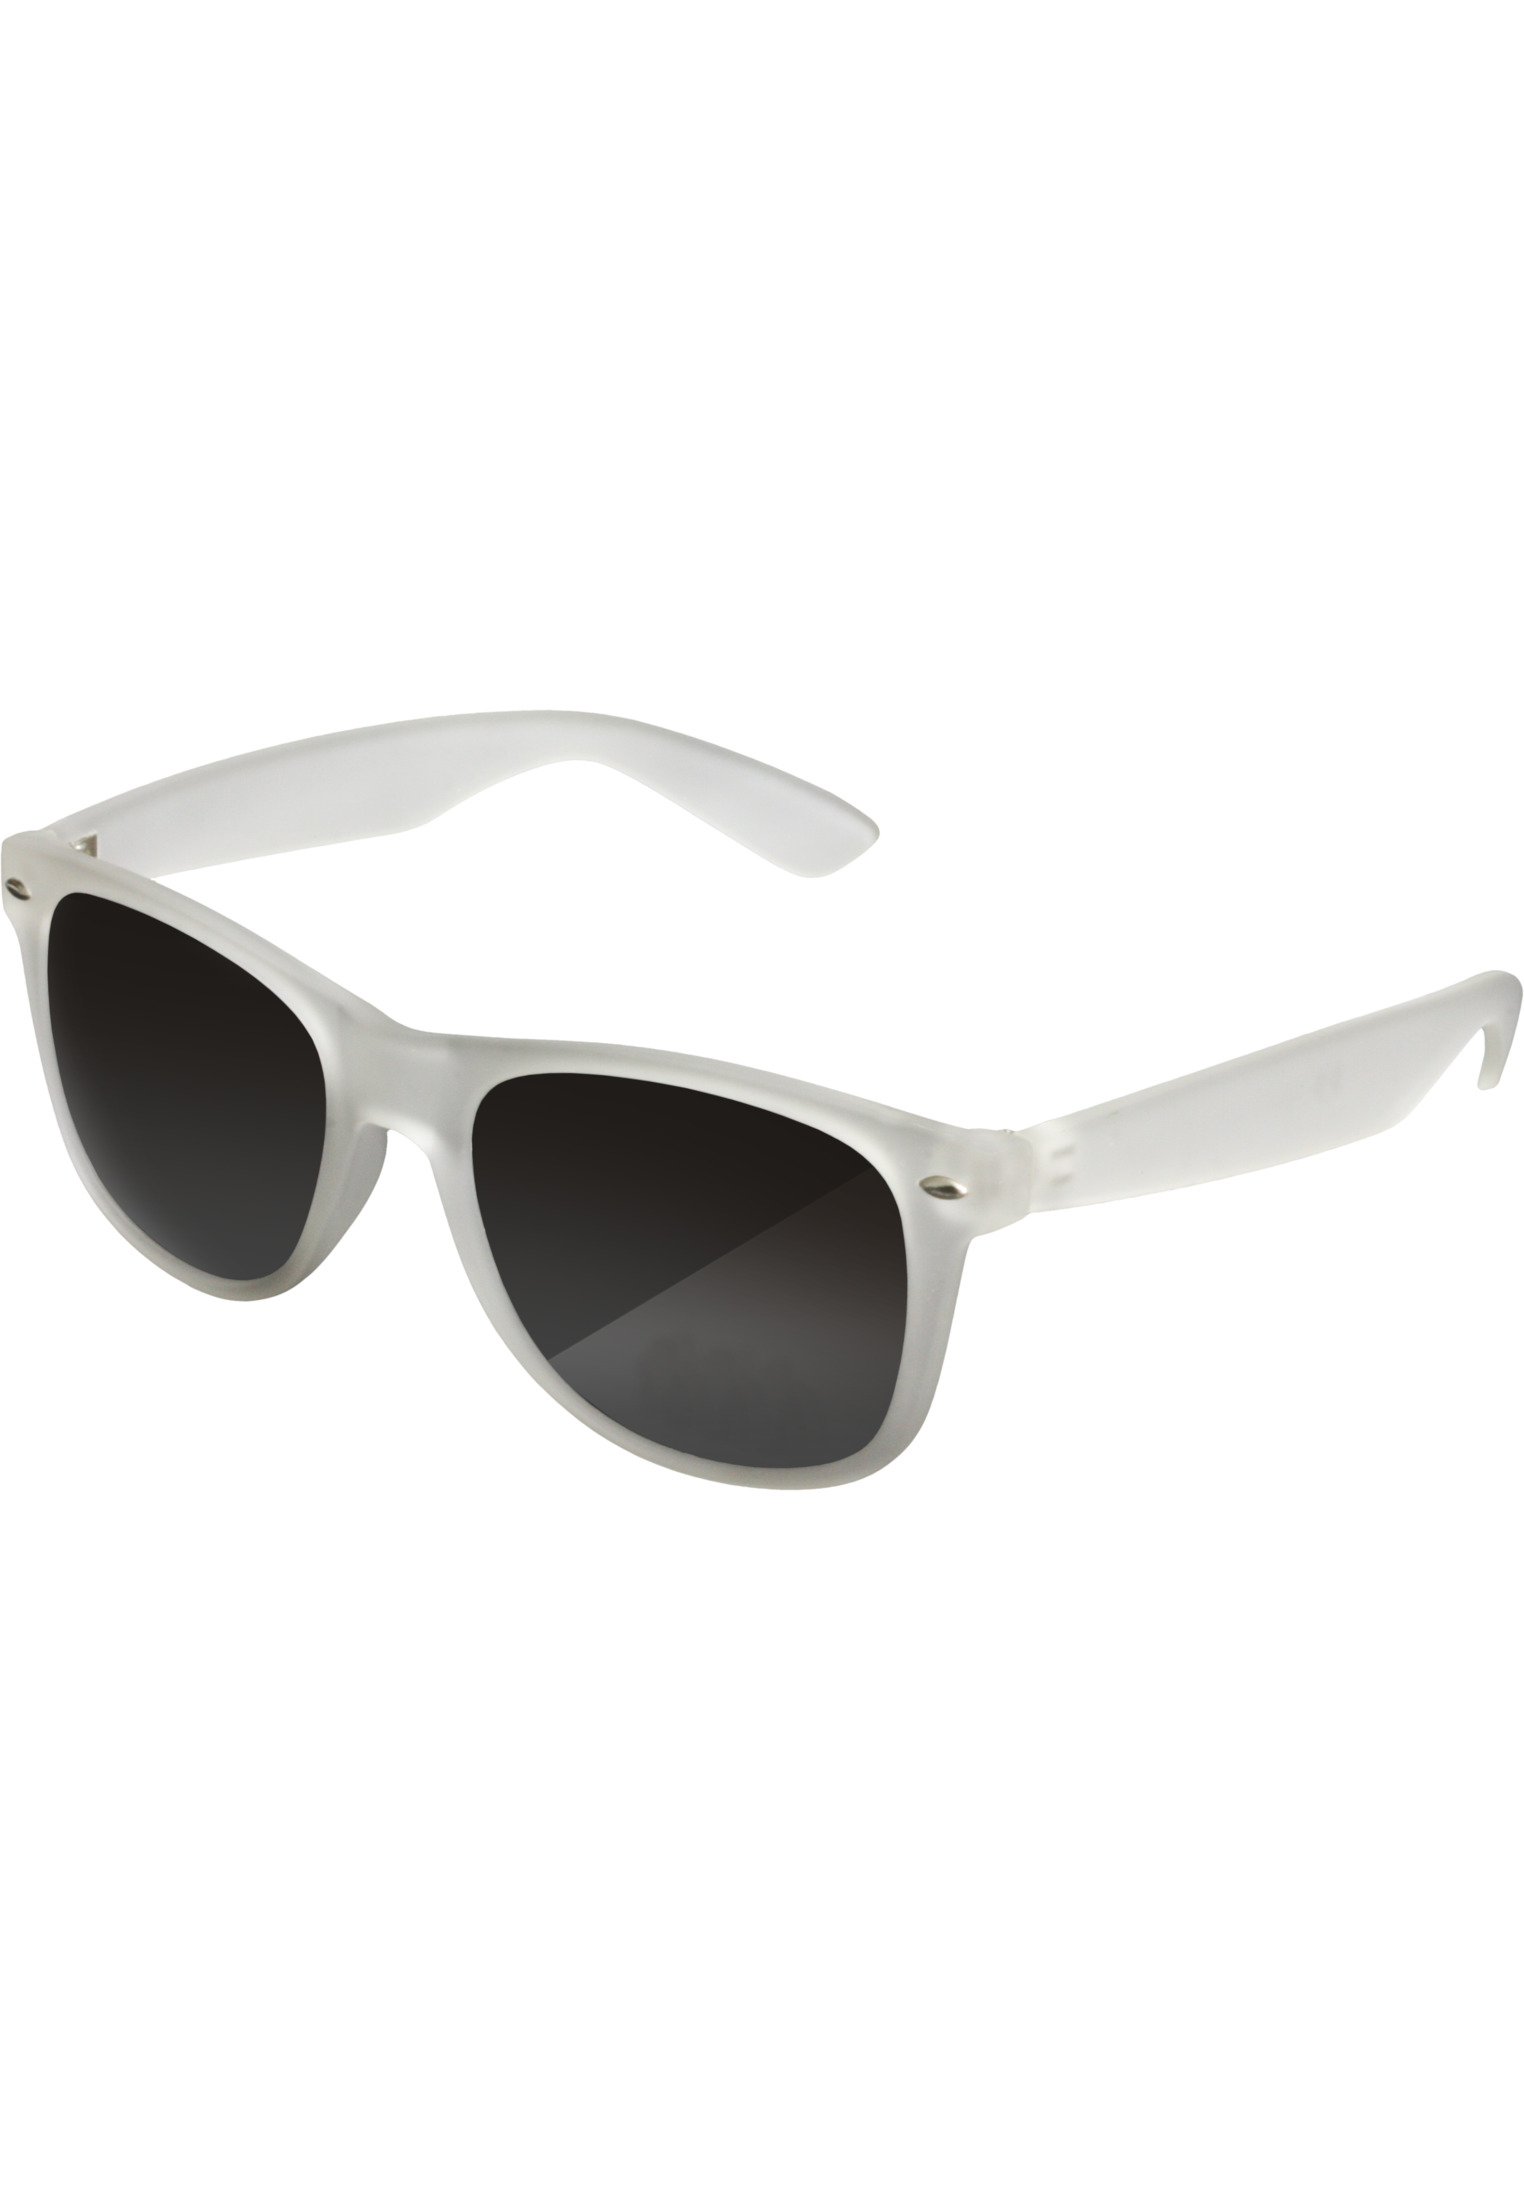 Likoma sunglasses clear